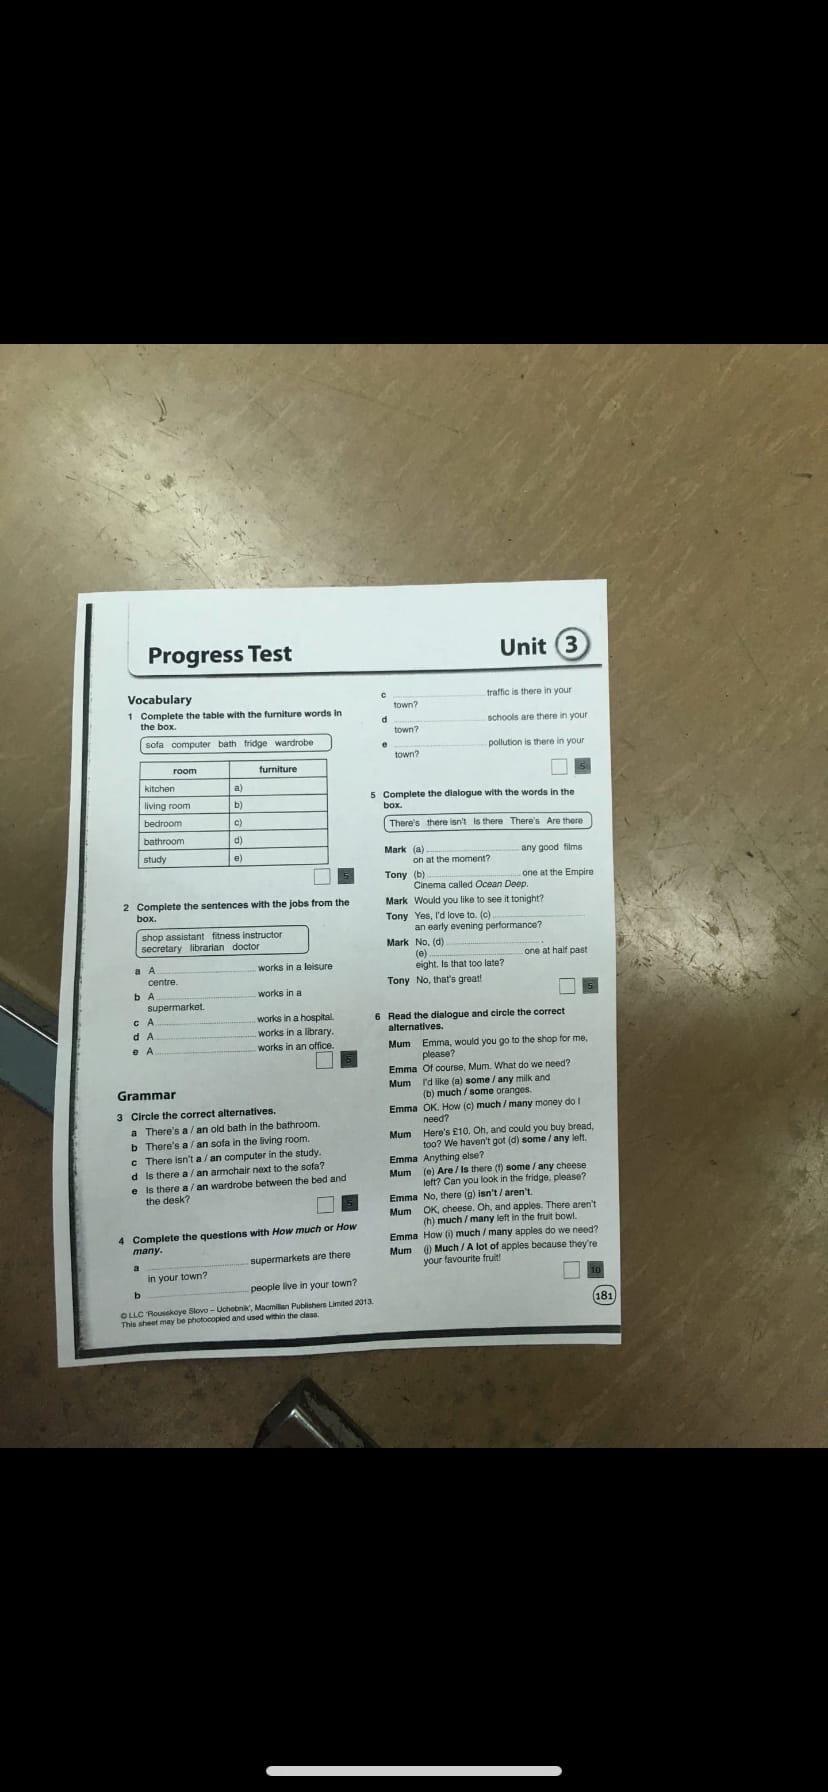 Контрольная работа unit 4 7 класс ответы. Прогресс тест Юнит 3 7 класс. Прогресс тест Юнит 7. Прогресс тест 3 Unit. Прогресс тест Юнит 3 8 класс.